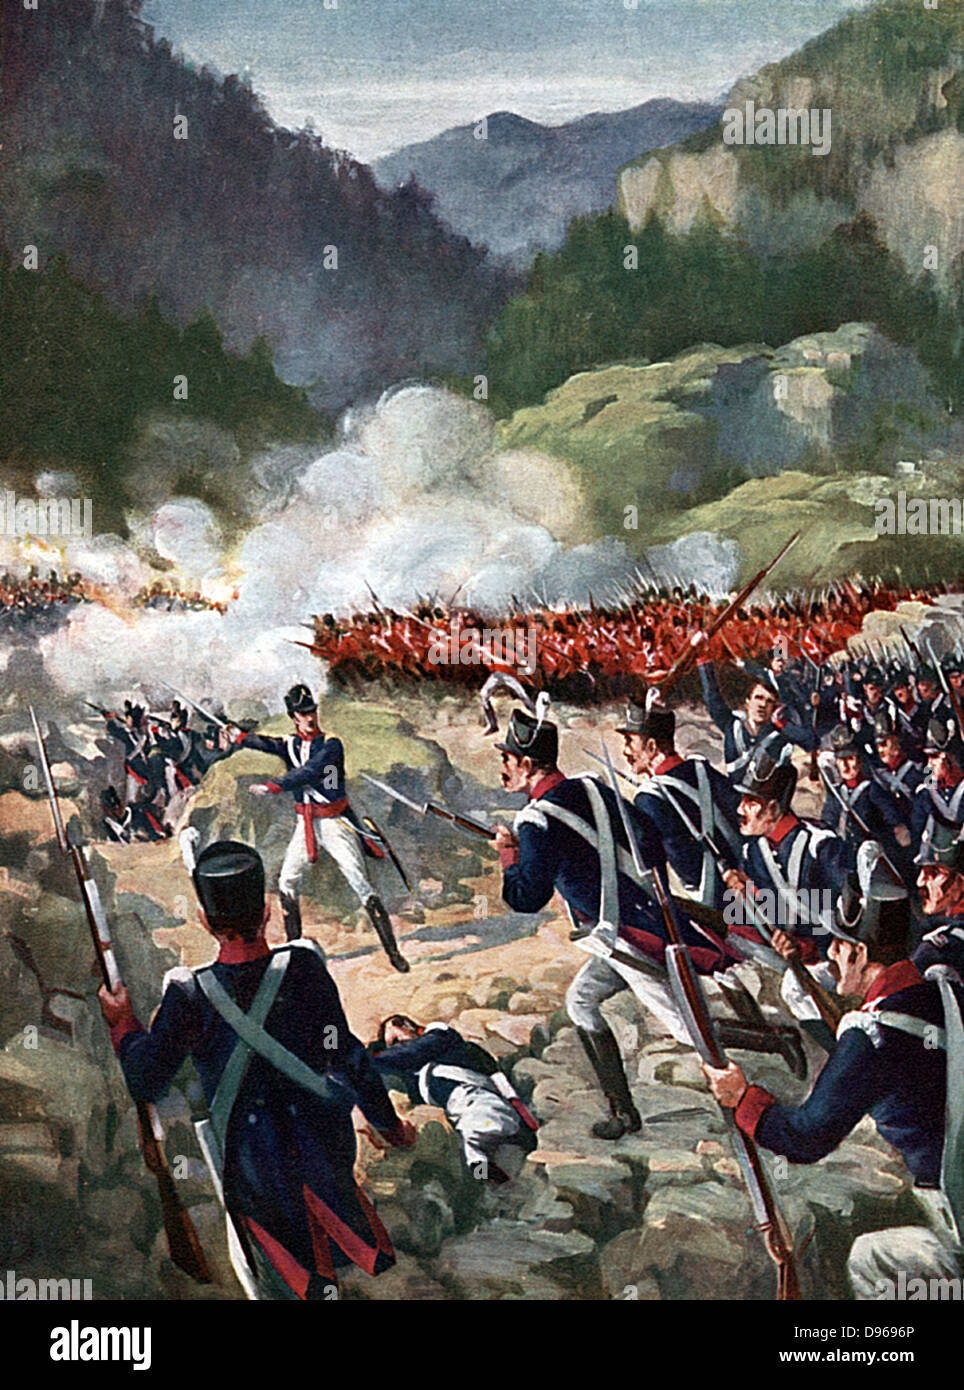 Schlacht von Busaco, 27. September 1810: Britische und alliierten Truppen unter Wellington zurückgeschlagen Franzosen unter Massena. Jahrhunderts Buch Abbildung. Stockfoto